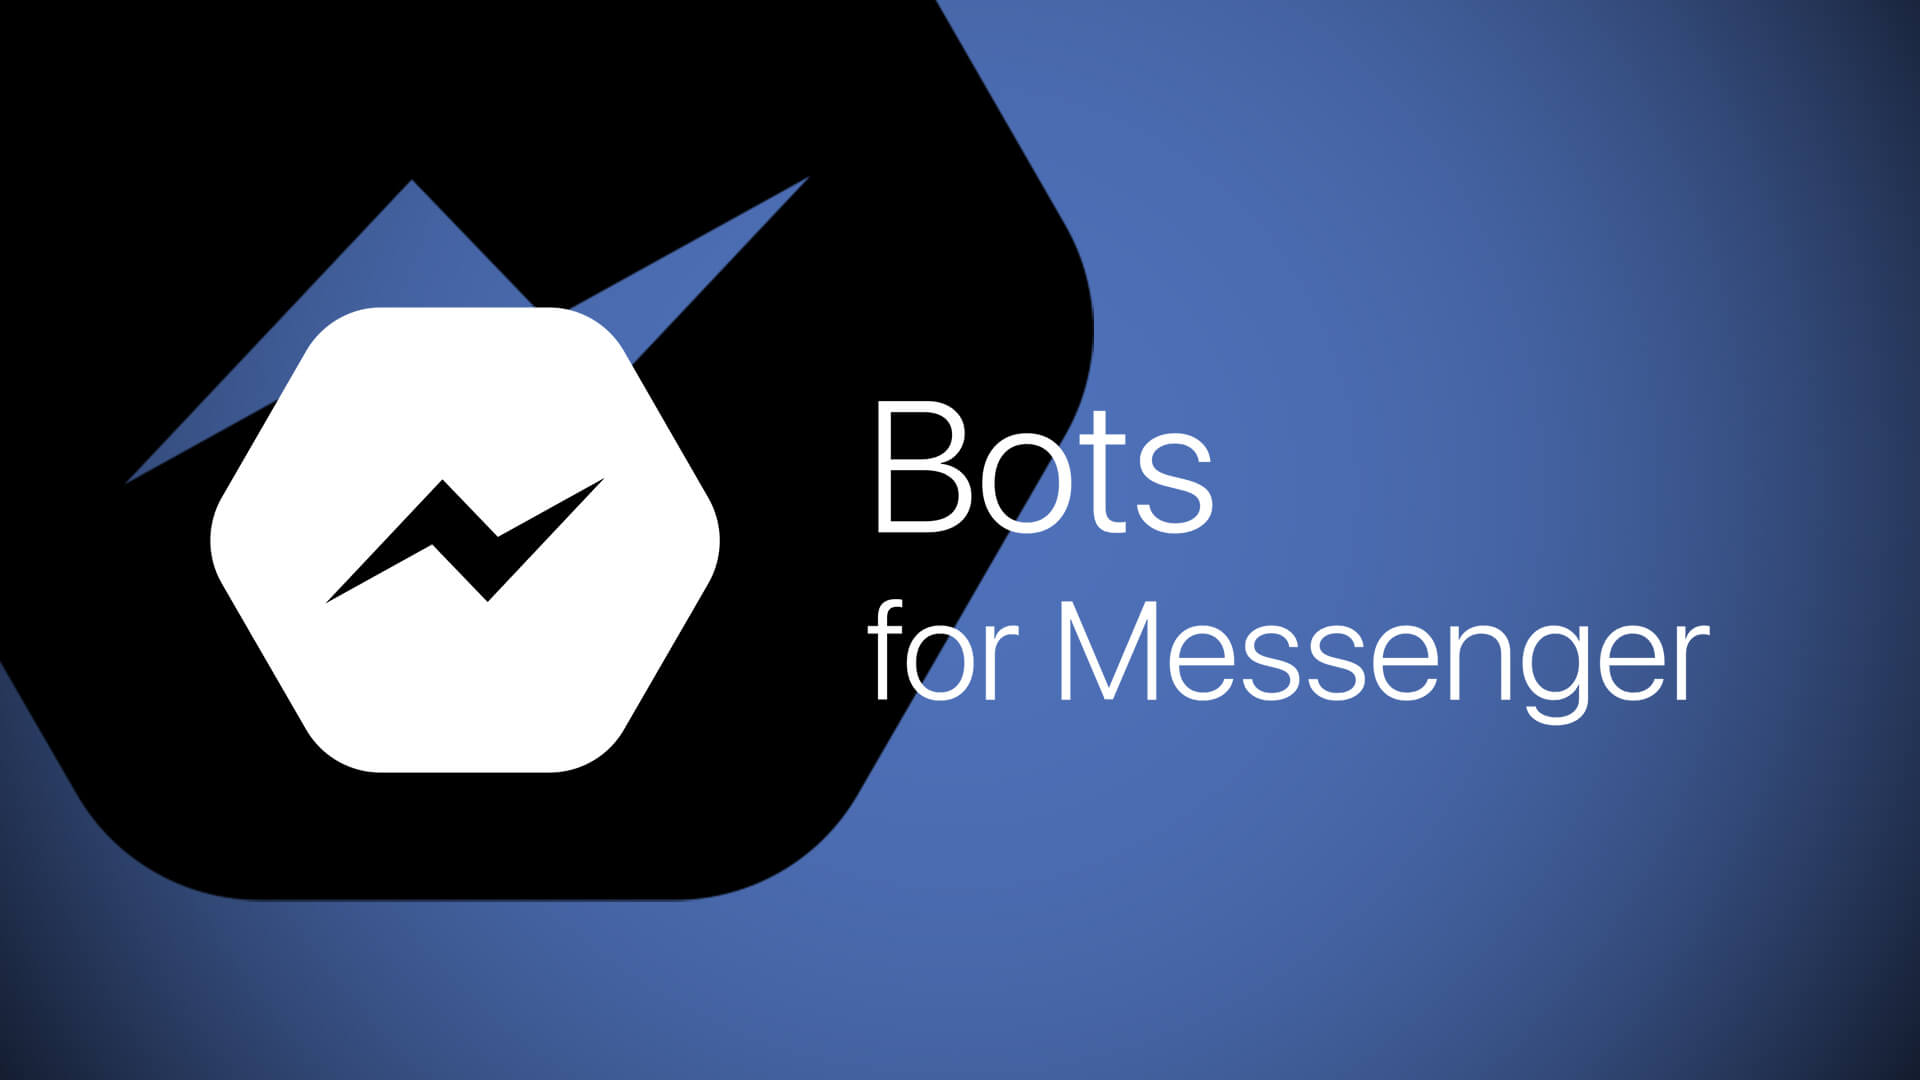 facebook-bots-messenger2-1920